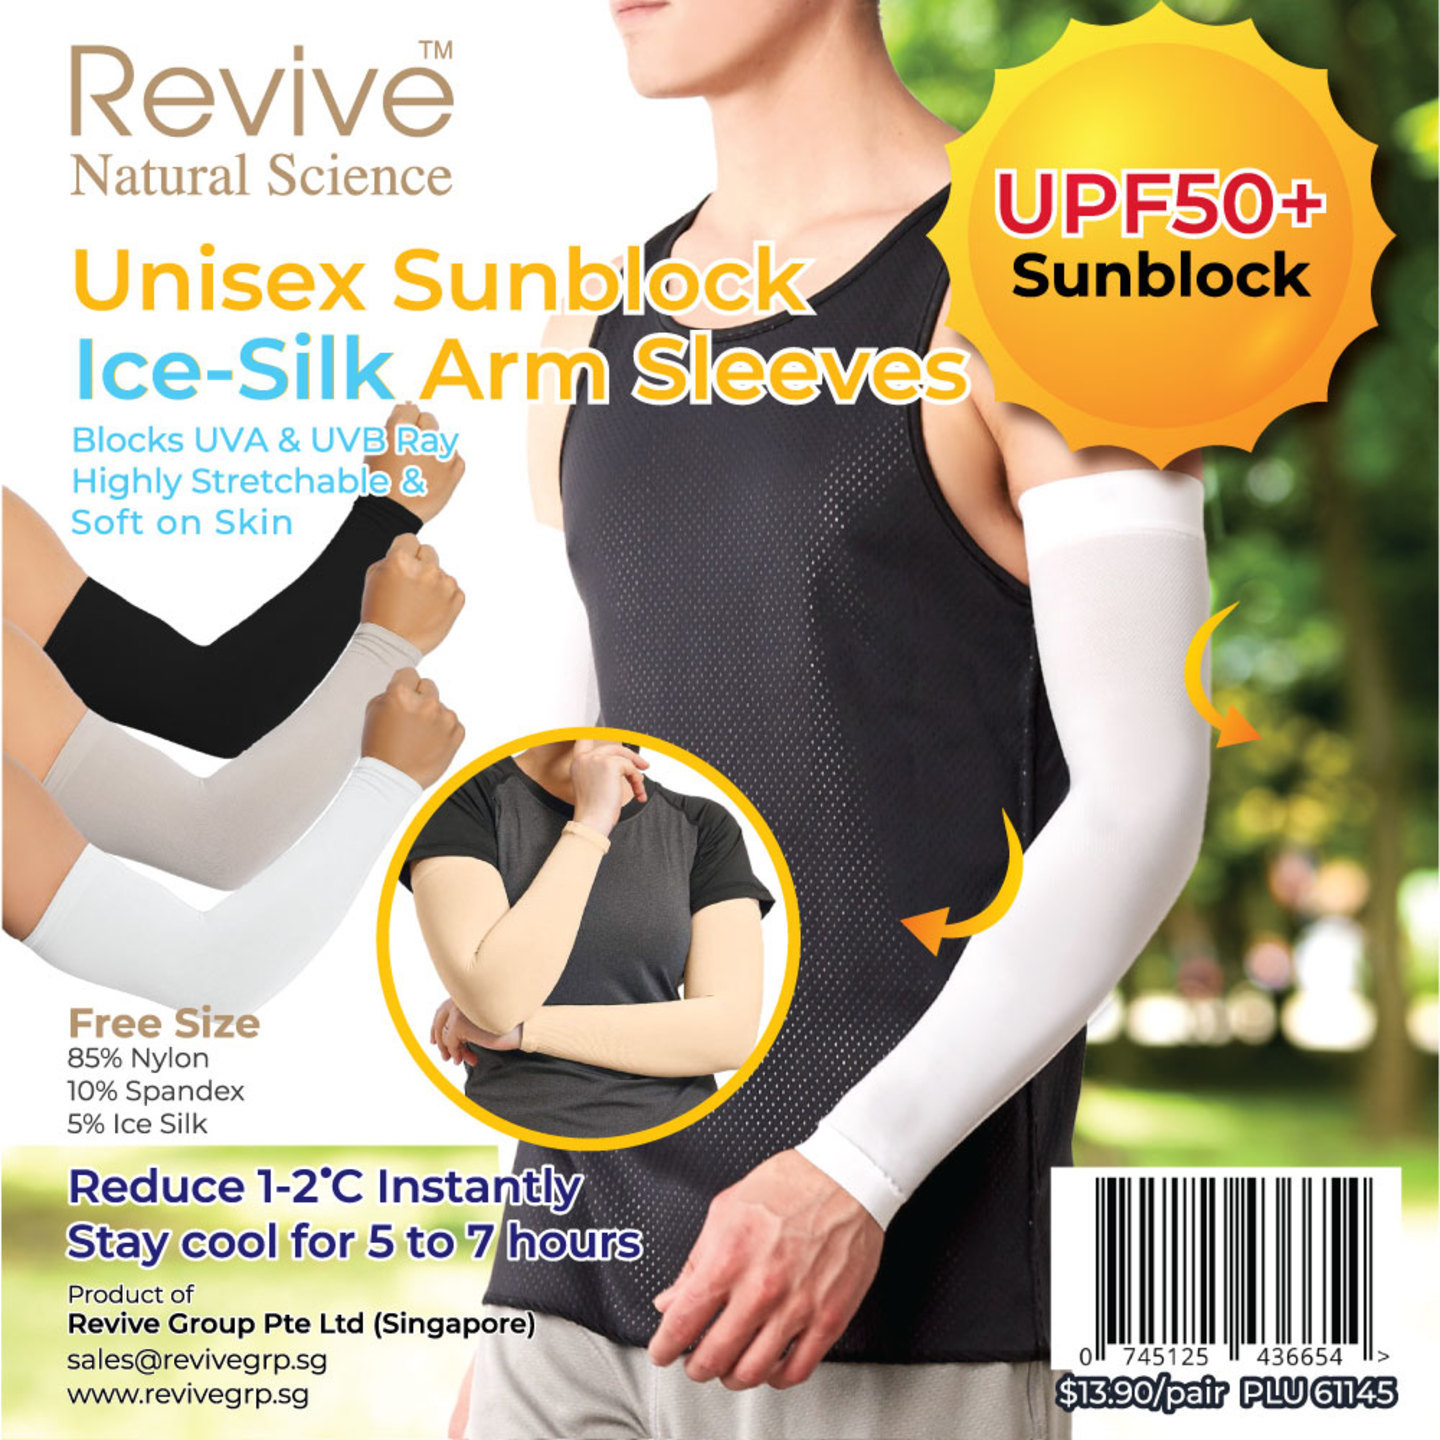 Unisex Sunblock Ice-Silk Arm Sleeves